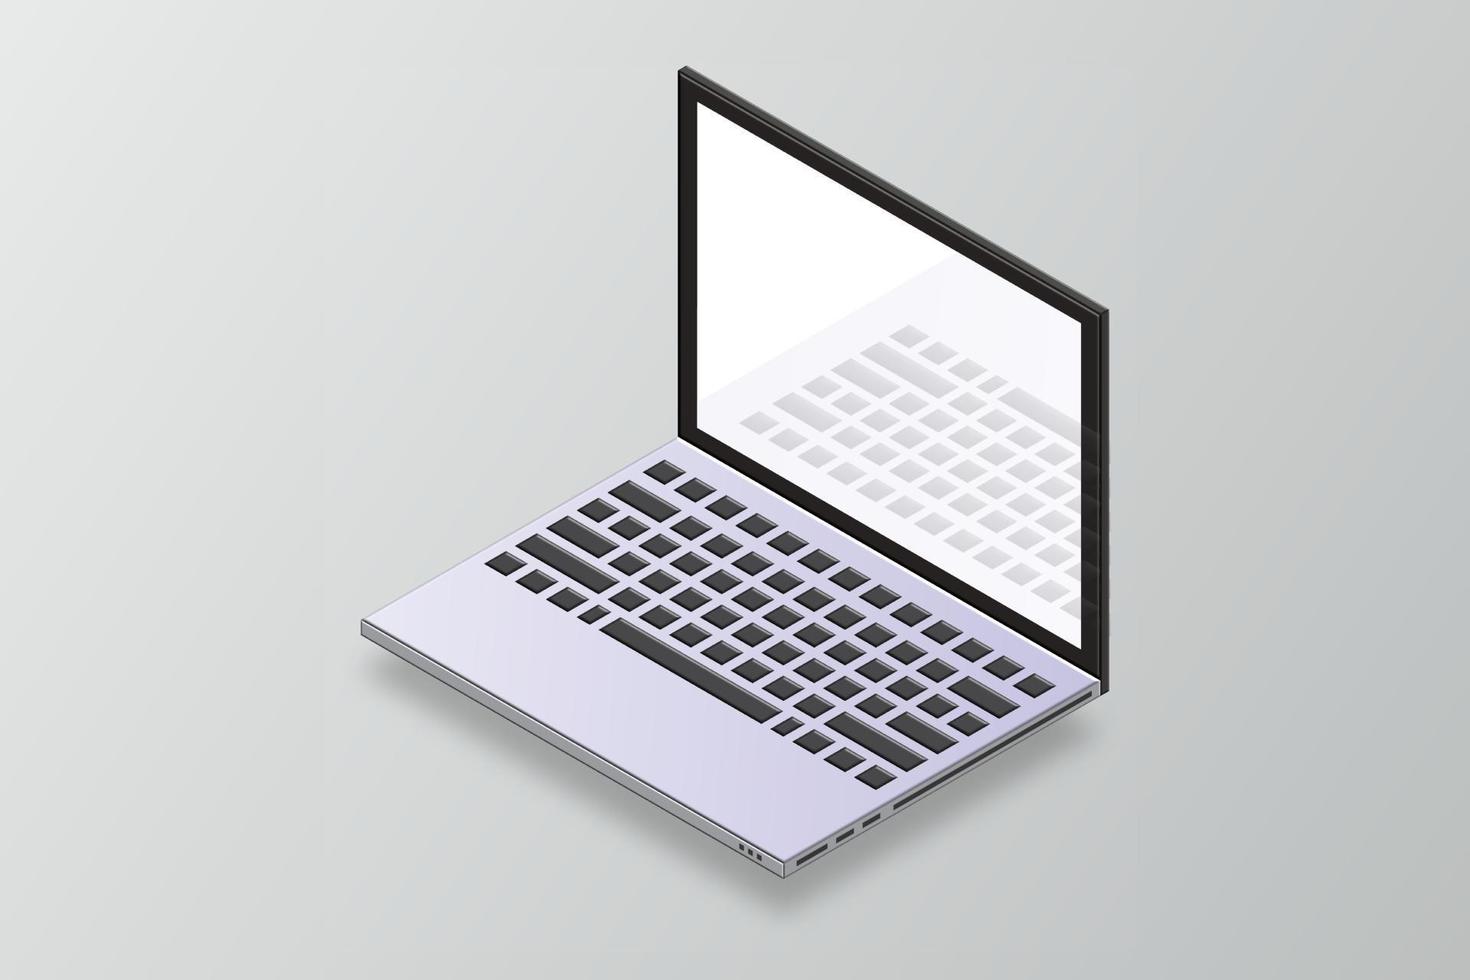 Vektor isometrische 3D-Laptop-Computer. isometrisches Modell des Laptops. 3D-Laptop-Modell. Computer mit leerem Bildschirm für App. Laptop mit offenem Display. Vektor-Illustration